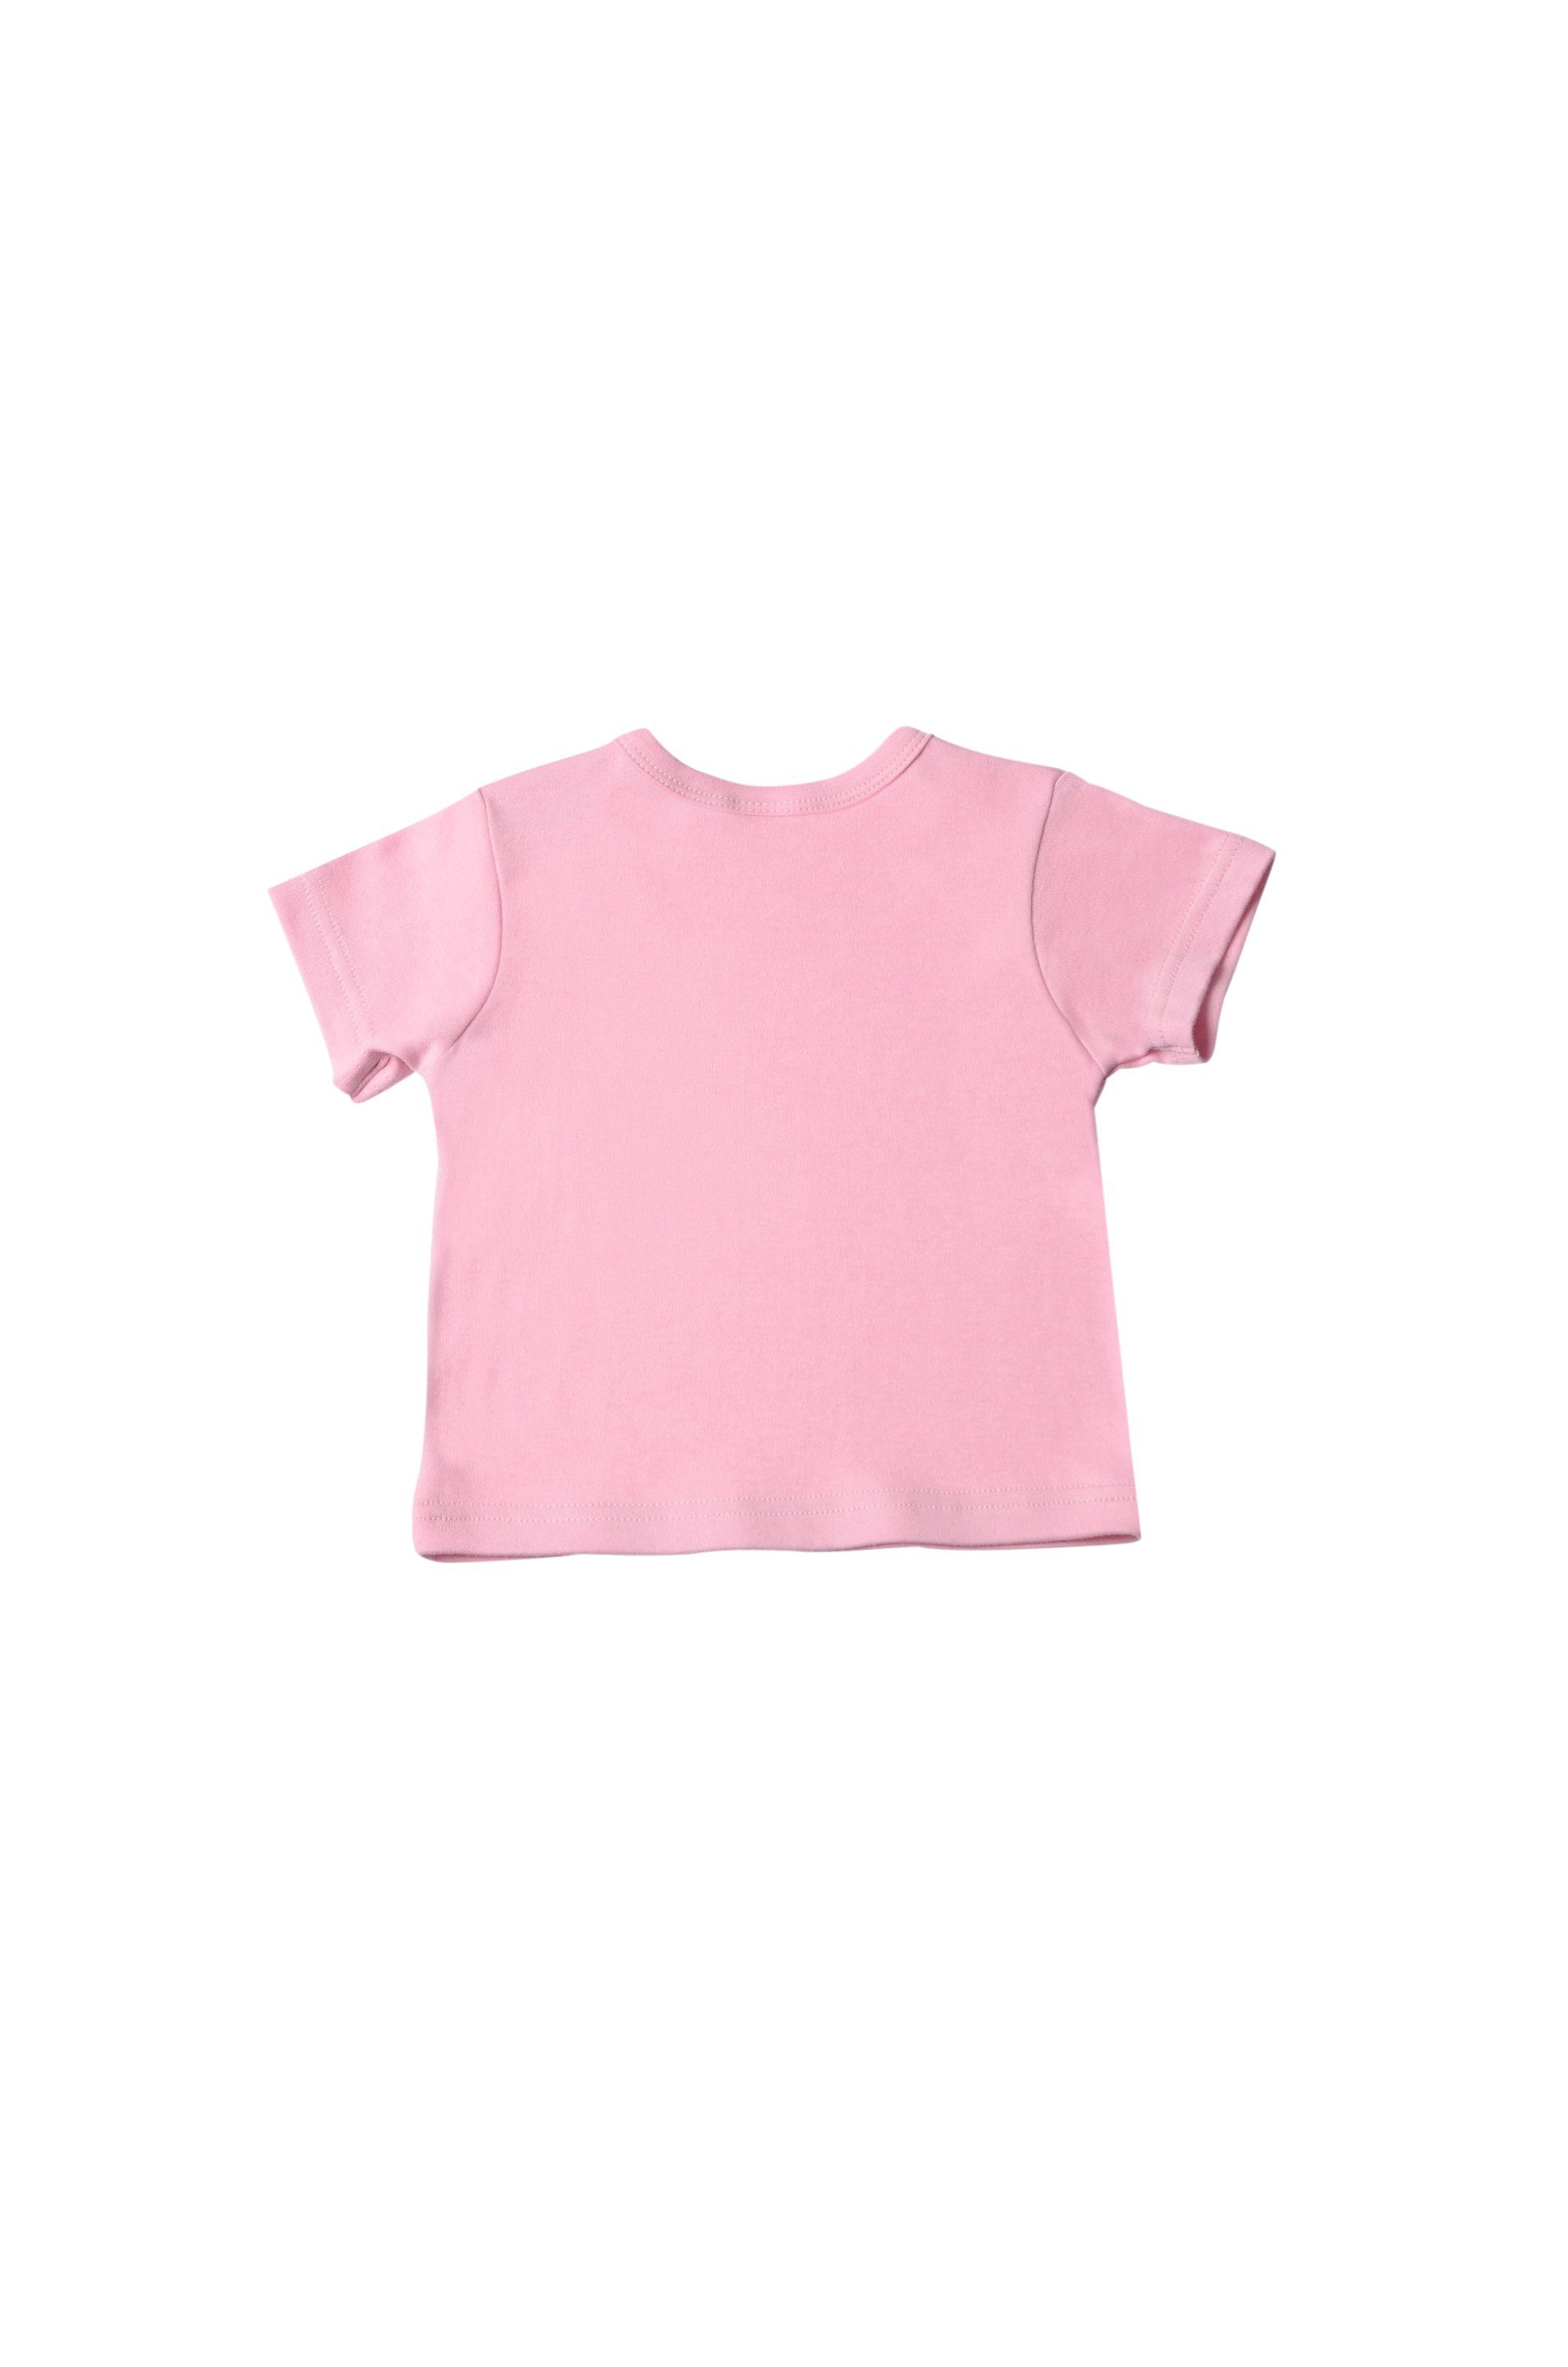 T-Shirt Druckknöpfen Liliput mit rosa